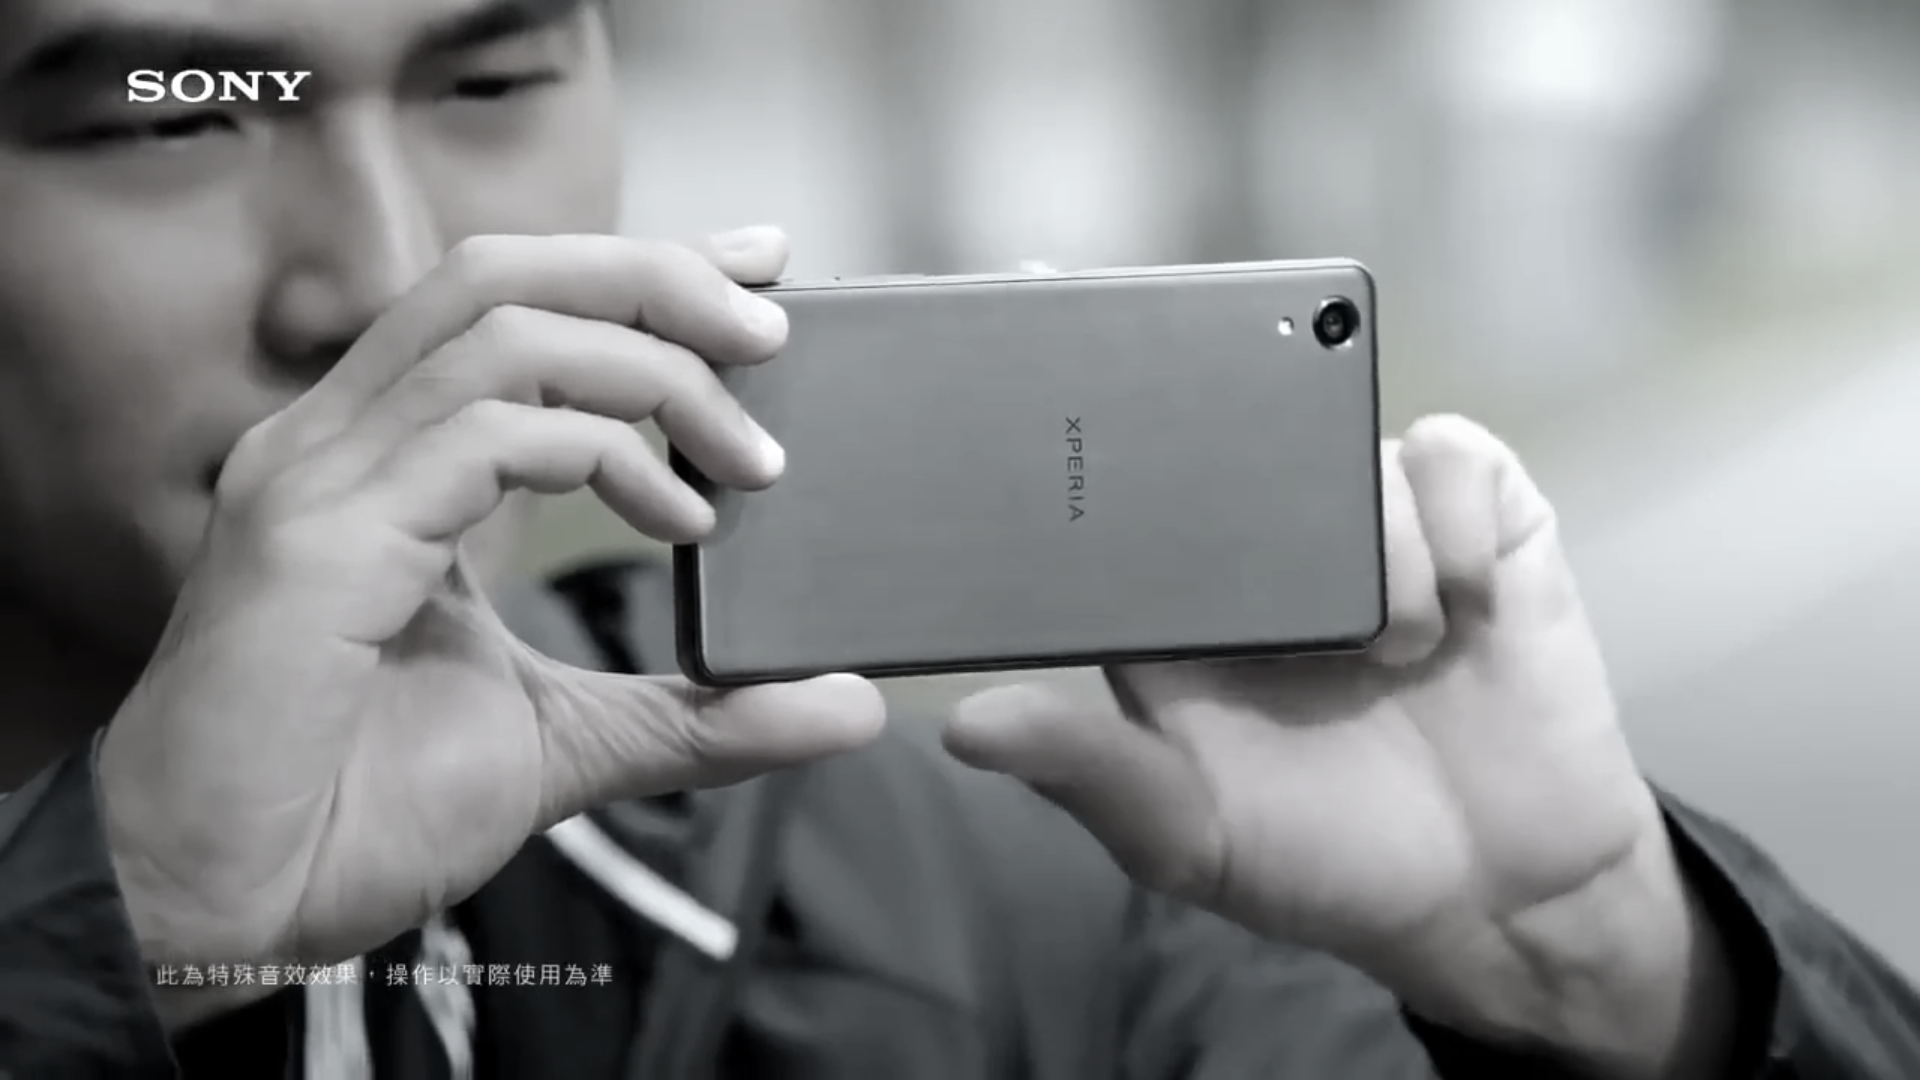 【广告作品】周杰倫Sony Xperia 手机